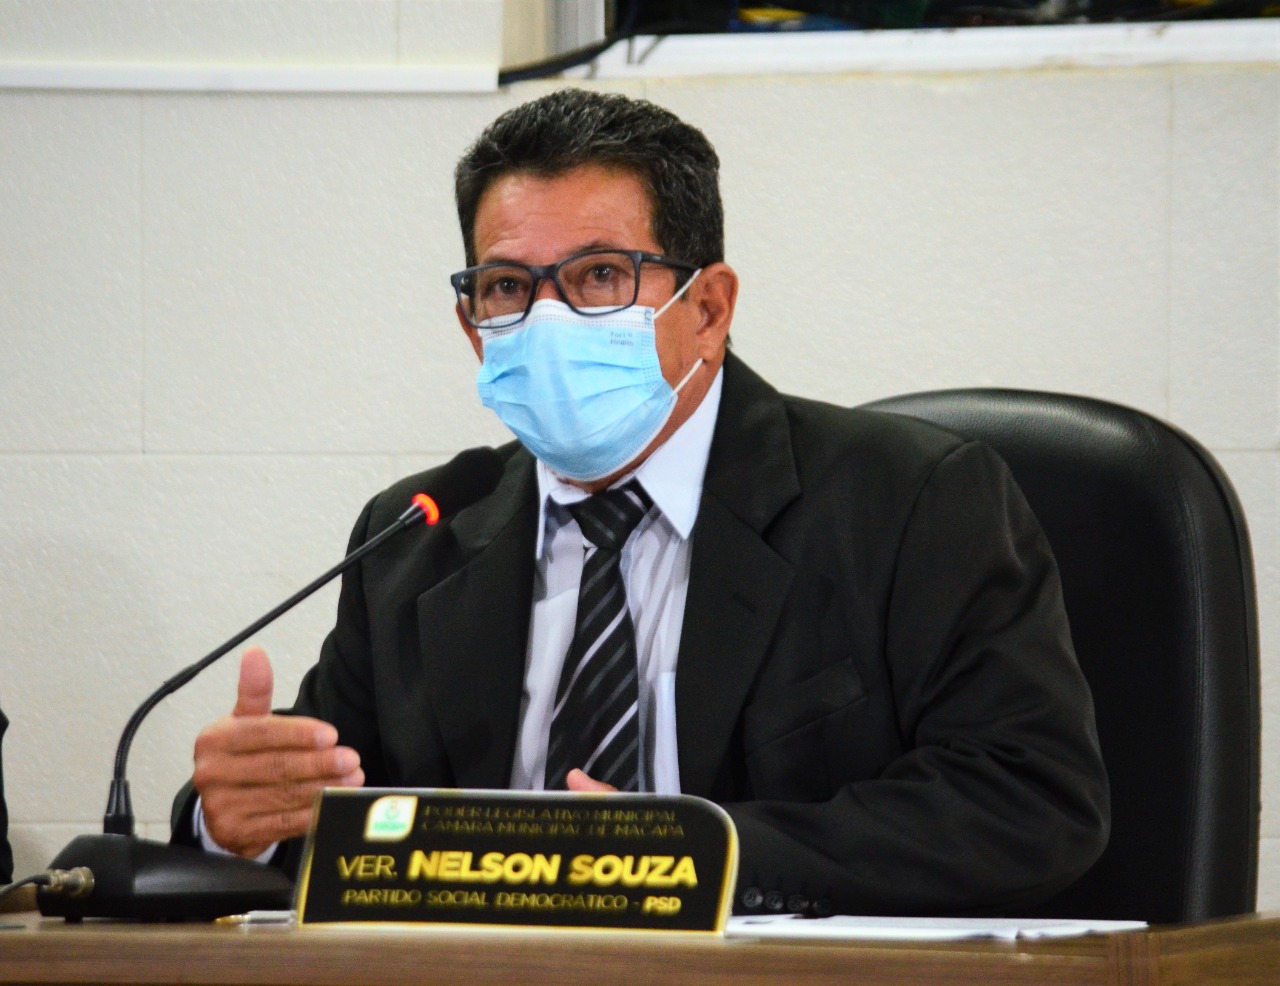 Vereador Nelson Souza destaca a luta em favor dos Ostomizados na Câmara Municipal de Macapá